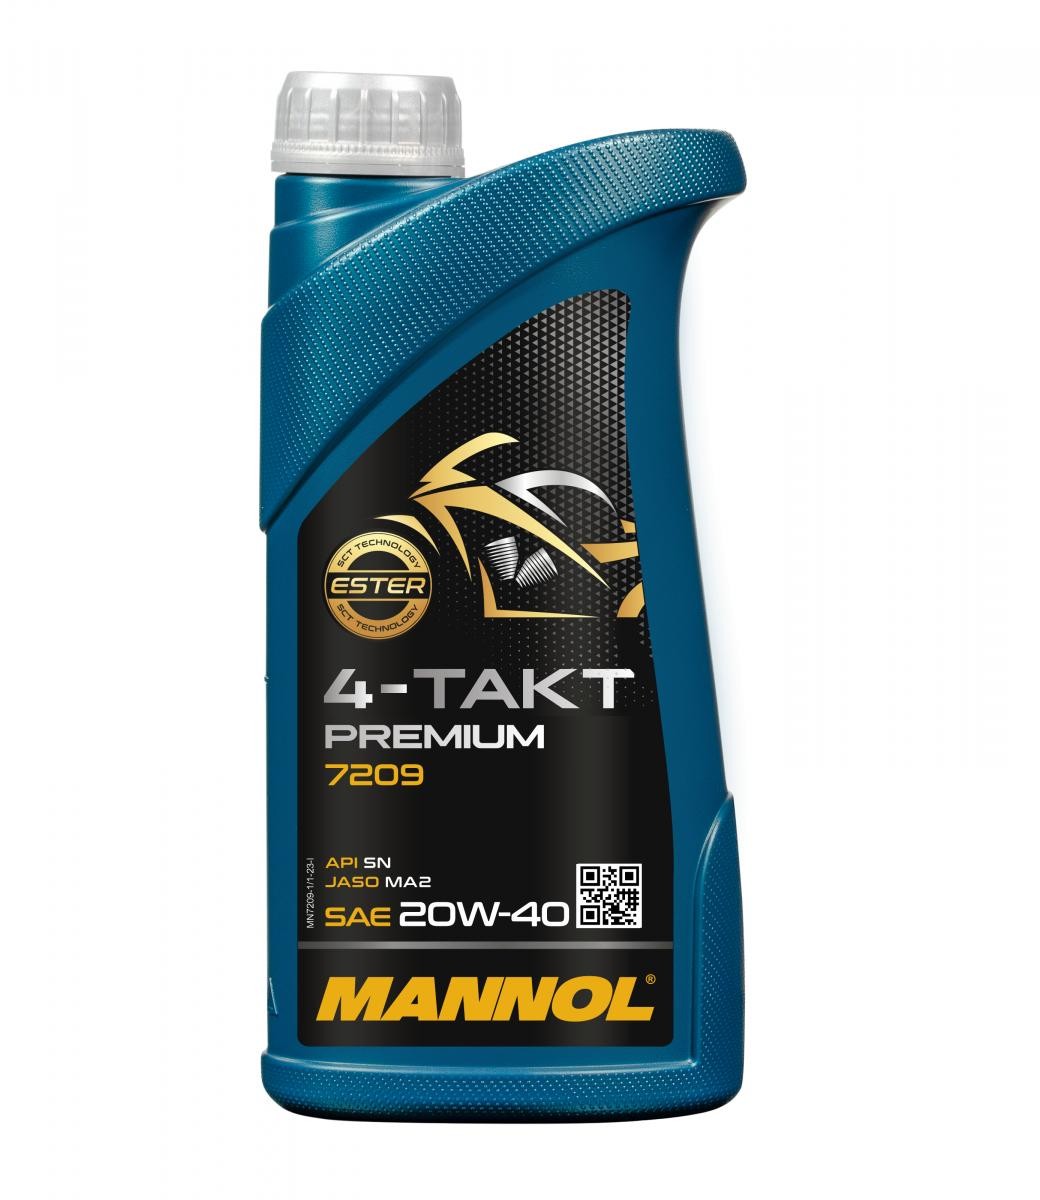 Kaufen Sie KFZ Motoröl MANNOL MN7209-1 Premium 20W-40, 1l